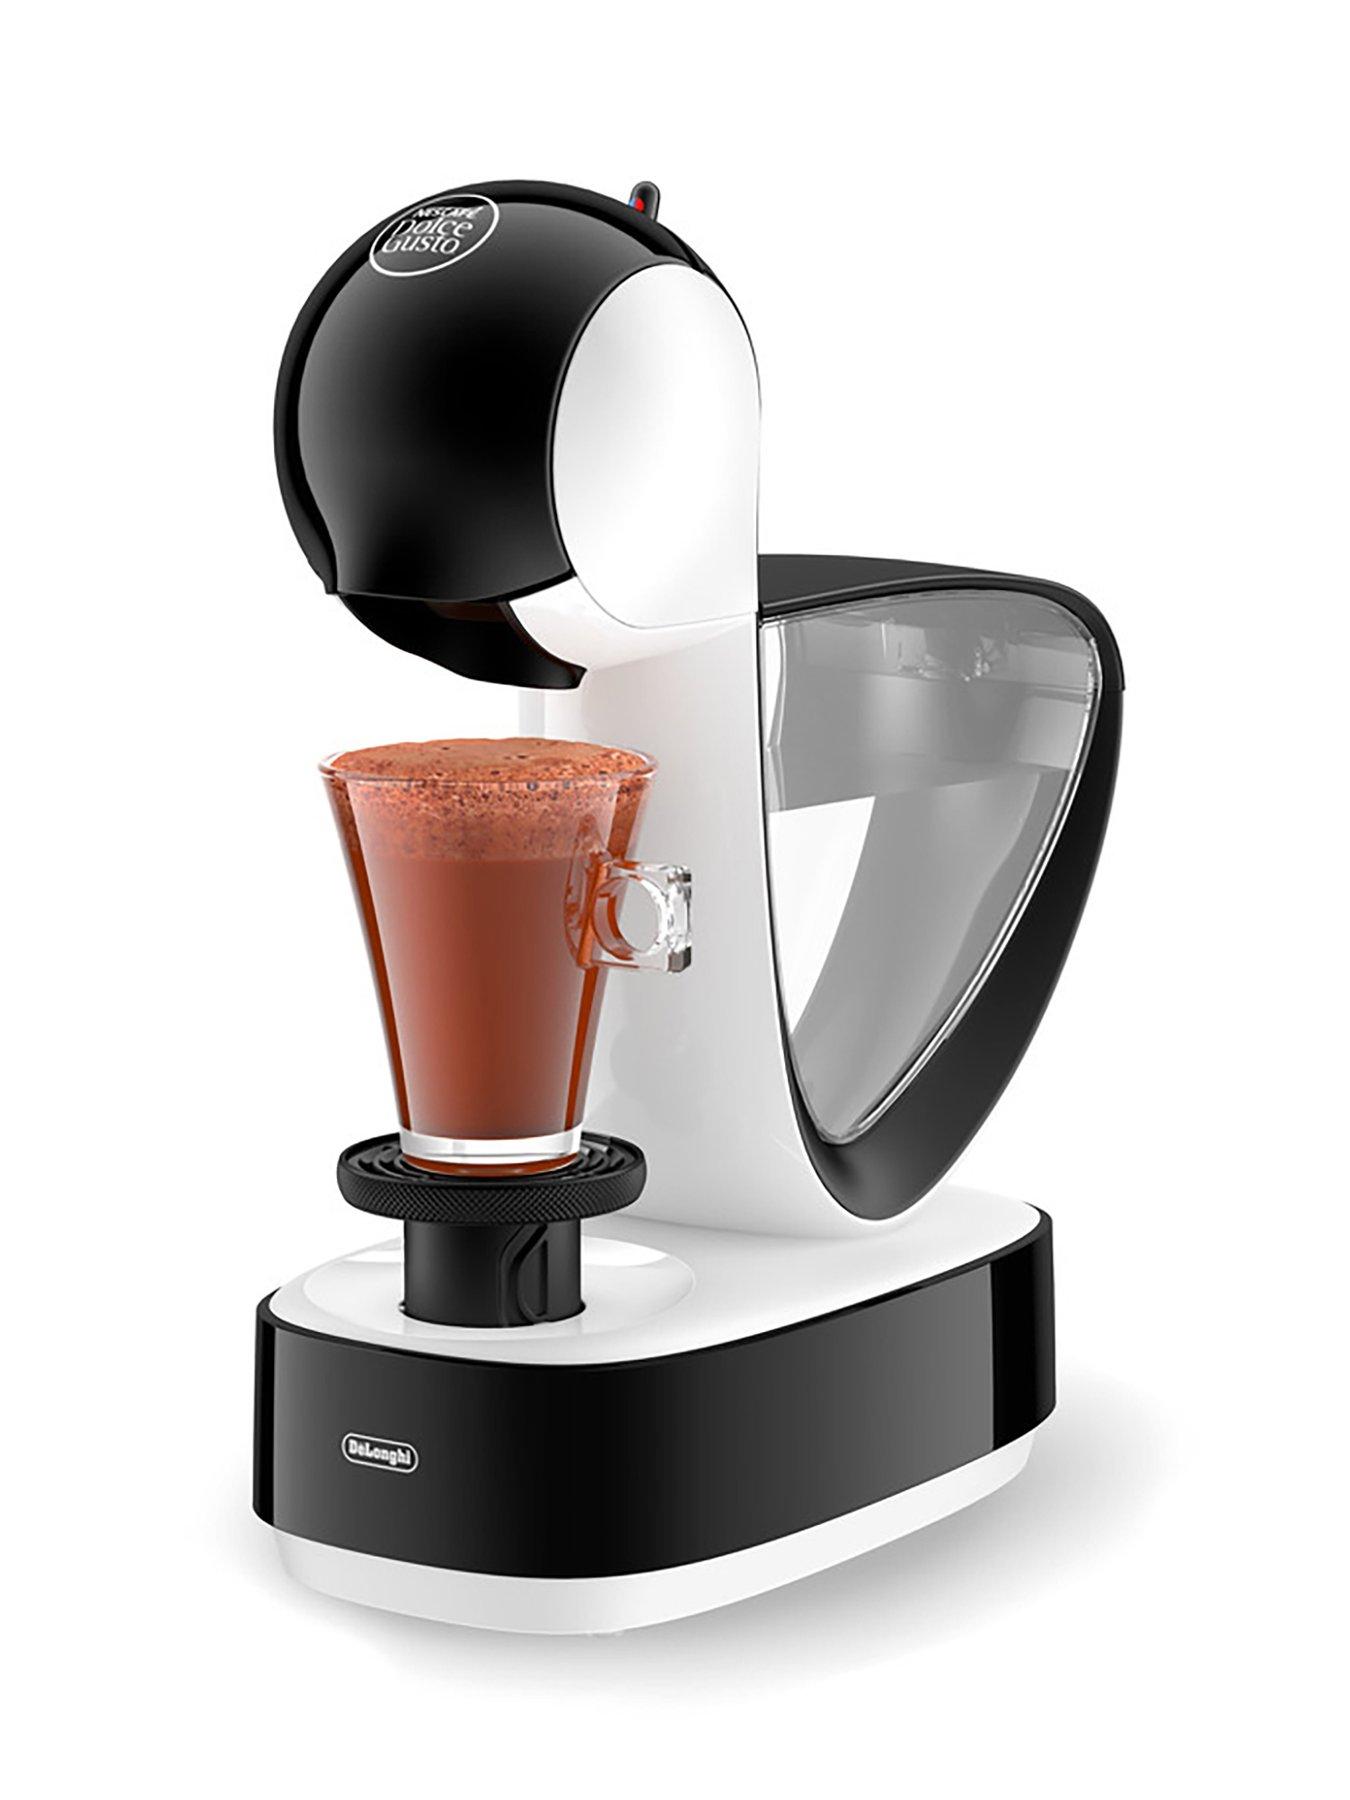 Set up your NESCAFÉ® Dolce Gusto® Colors coffee machine by De'Longhi® 